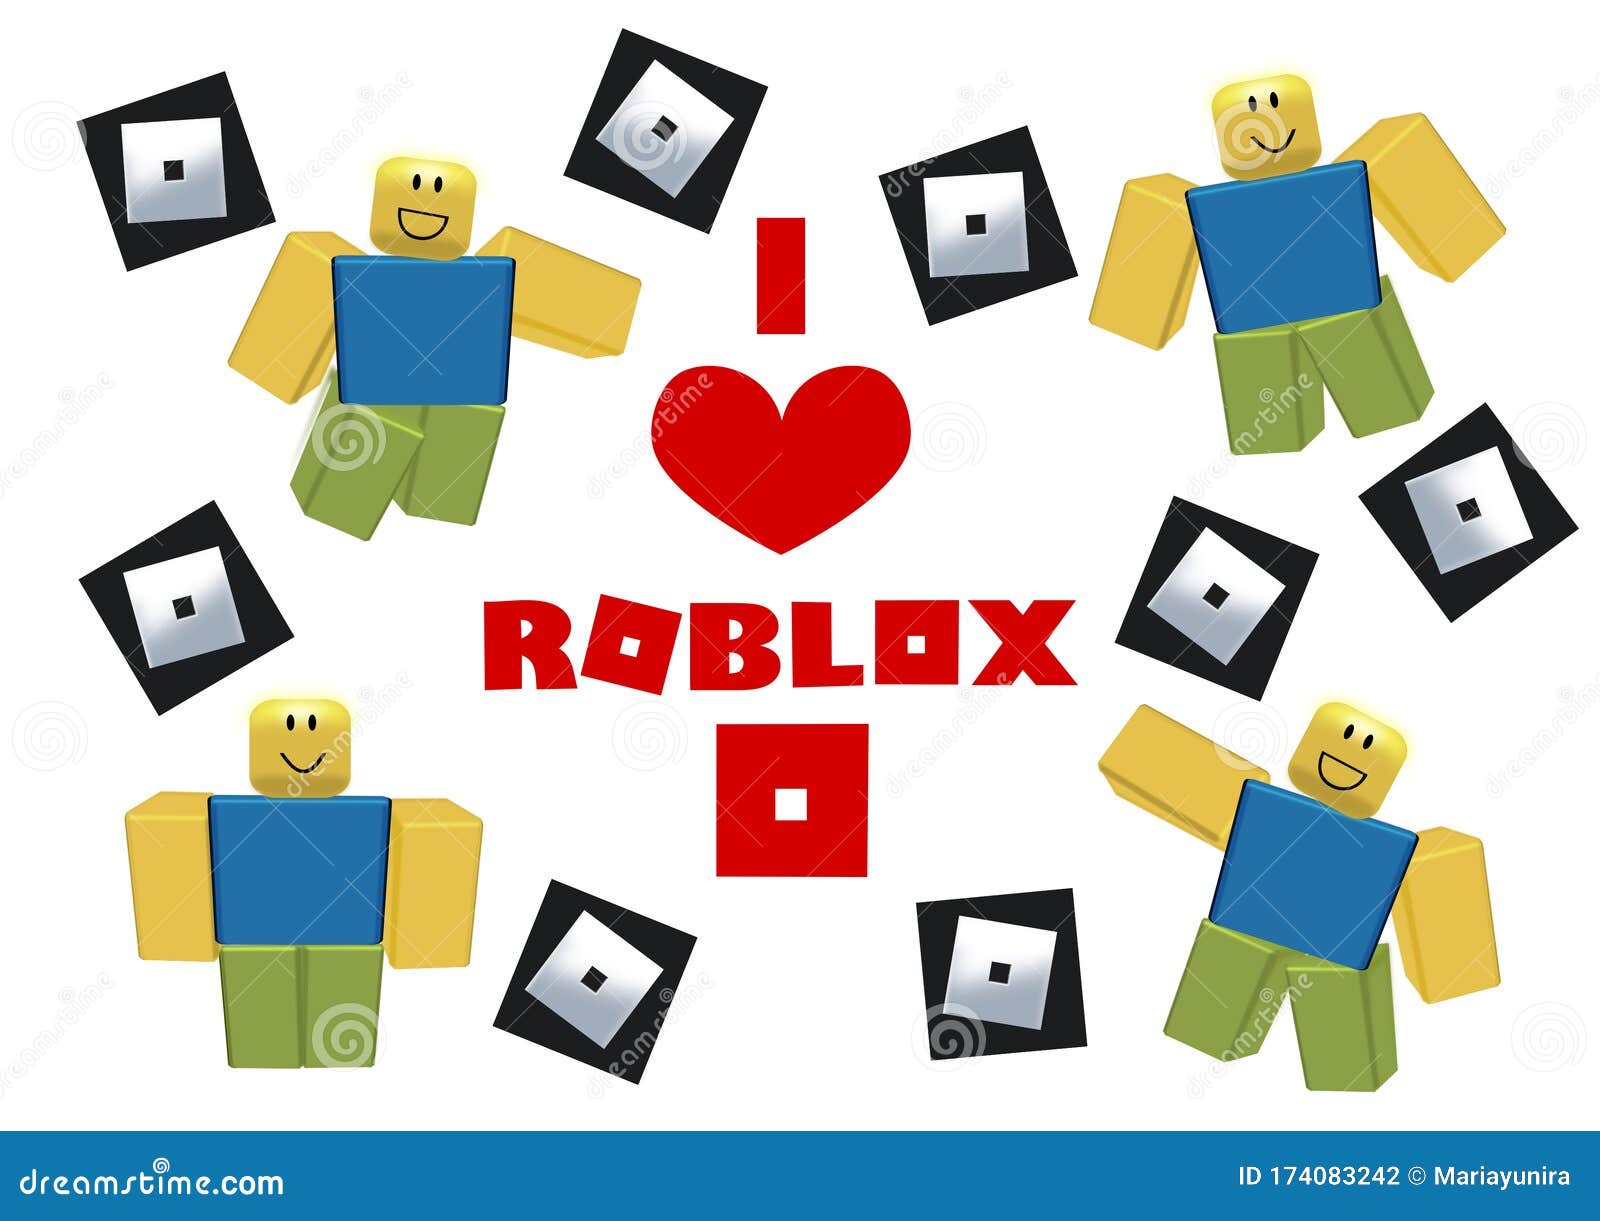 Roblox noob character